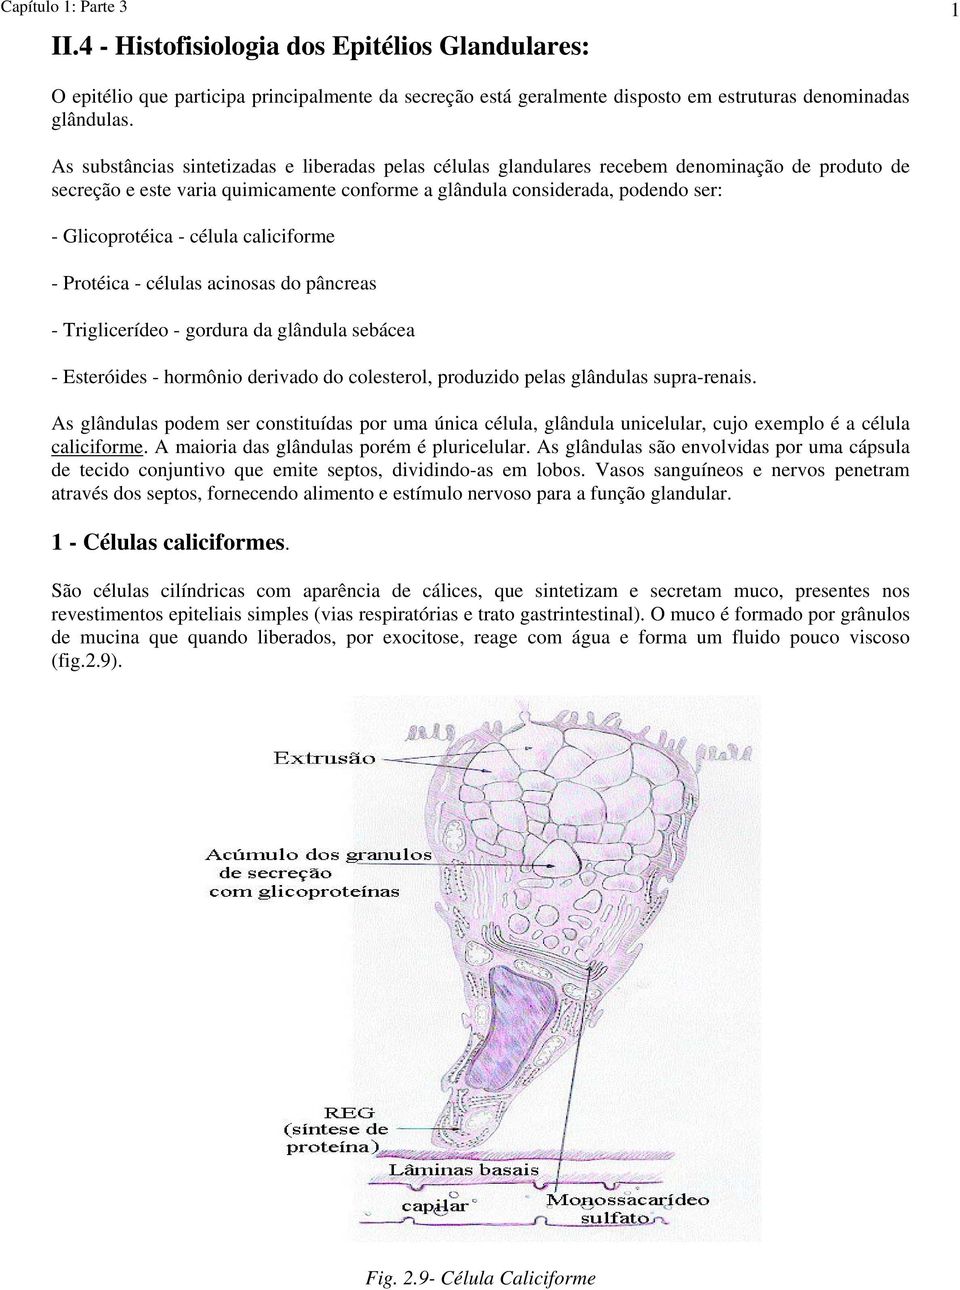 célula caliciforme - Protéica - células acinosas do pâncreas - Triglicerídeo - gordura da glândula sebácea - Esteróides - hormônio derivado do colesterol, produzido pelas glândulas supra-renais.